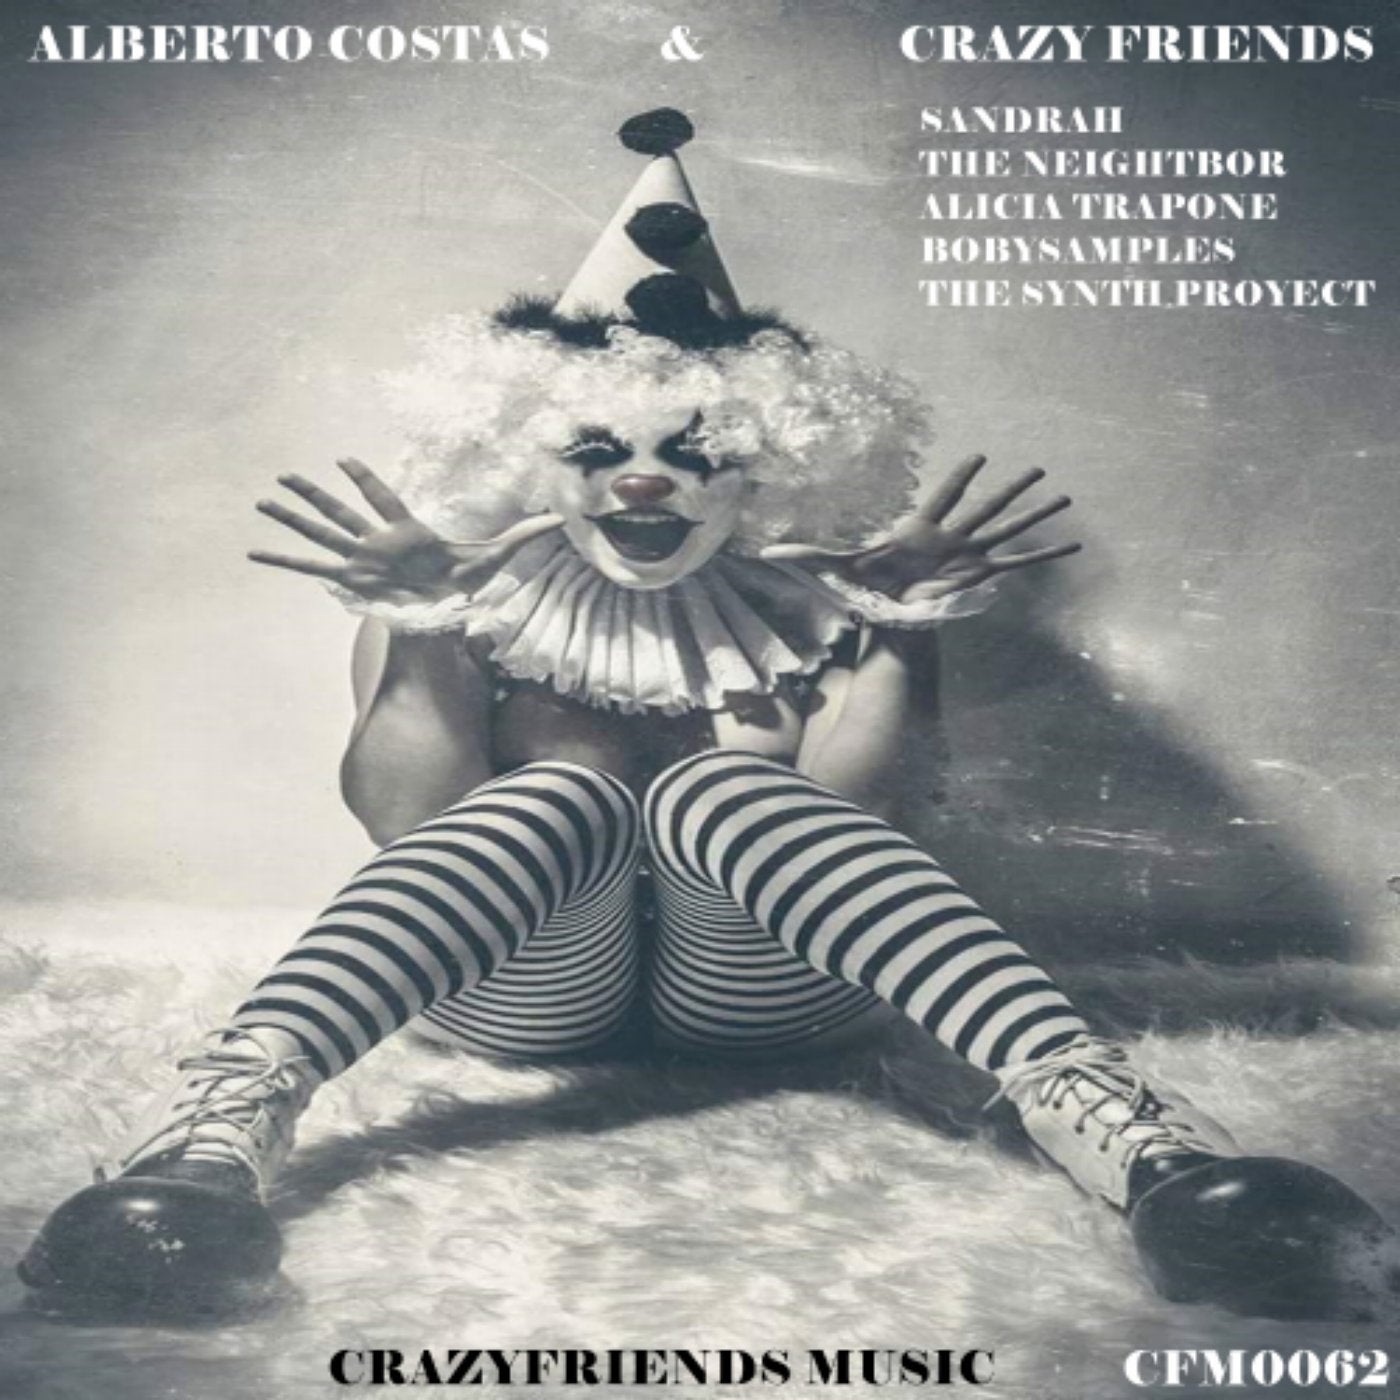 Alberto Costas & Crazy Friends